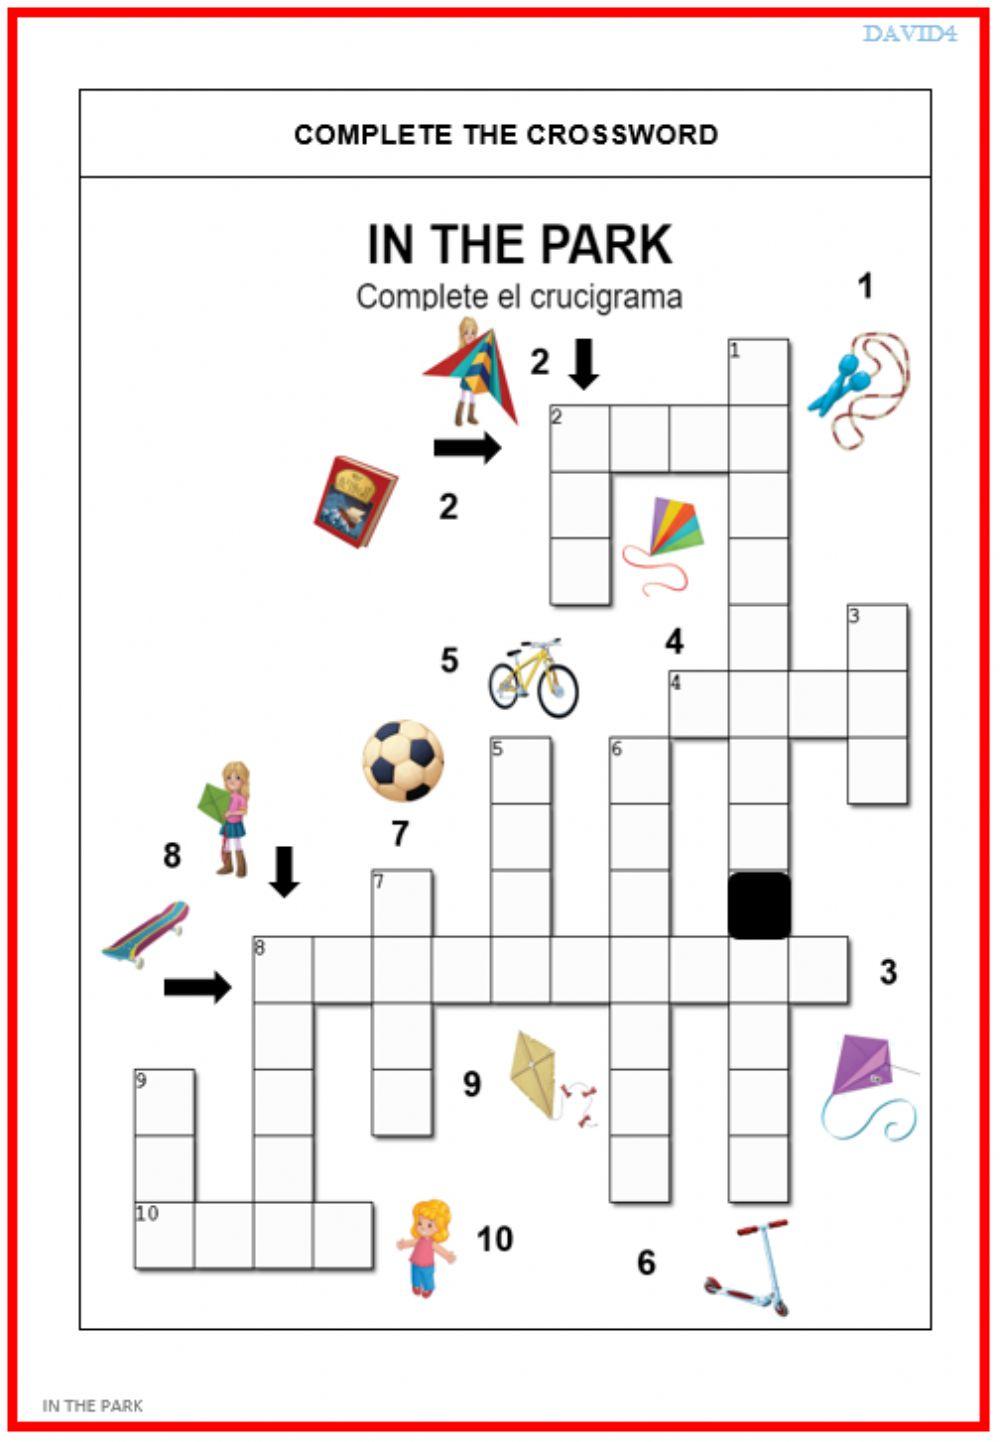 In the park. Crossword